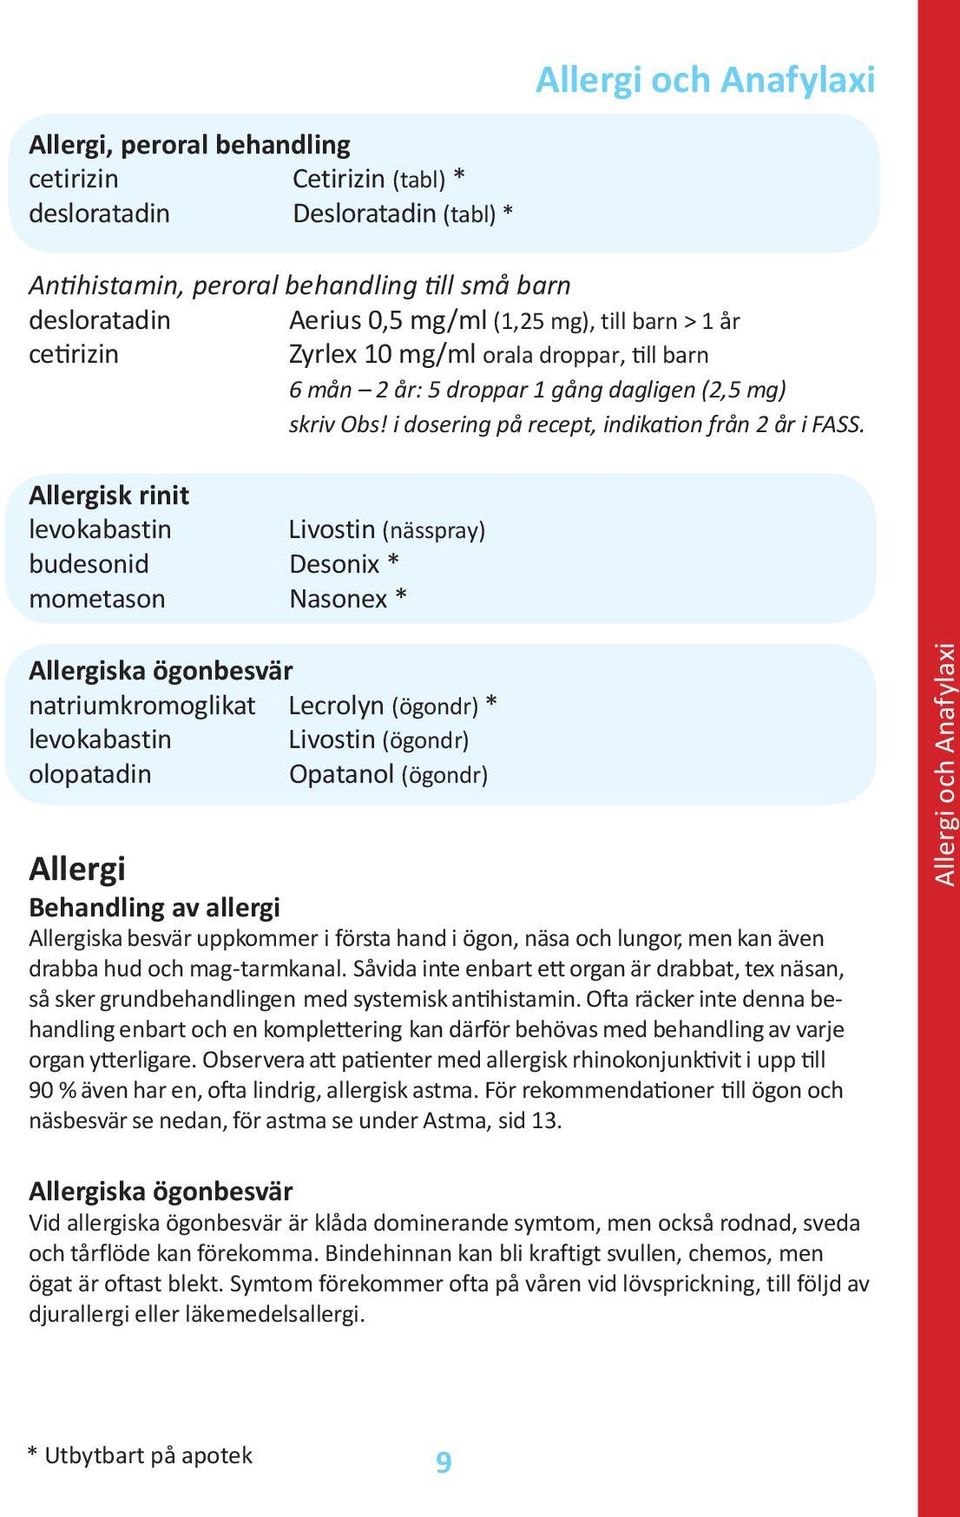 Allergisk rinit levokabastin Livostin (nässpray) budesonid Desonix * mometason Nasonex * Allergiska ögonbesvär natriumkromoglikat Lecrolyn (ögondr) * levokabastin Livostin (ögondr) olopatadin